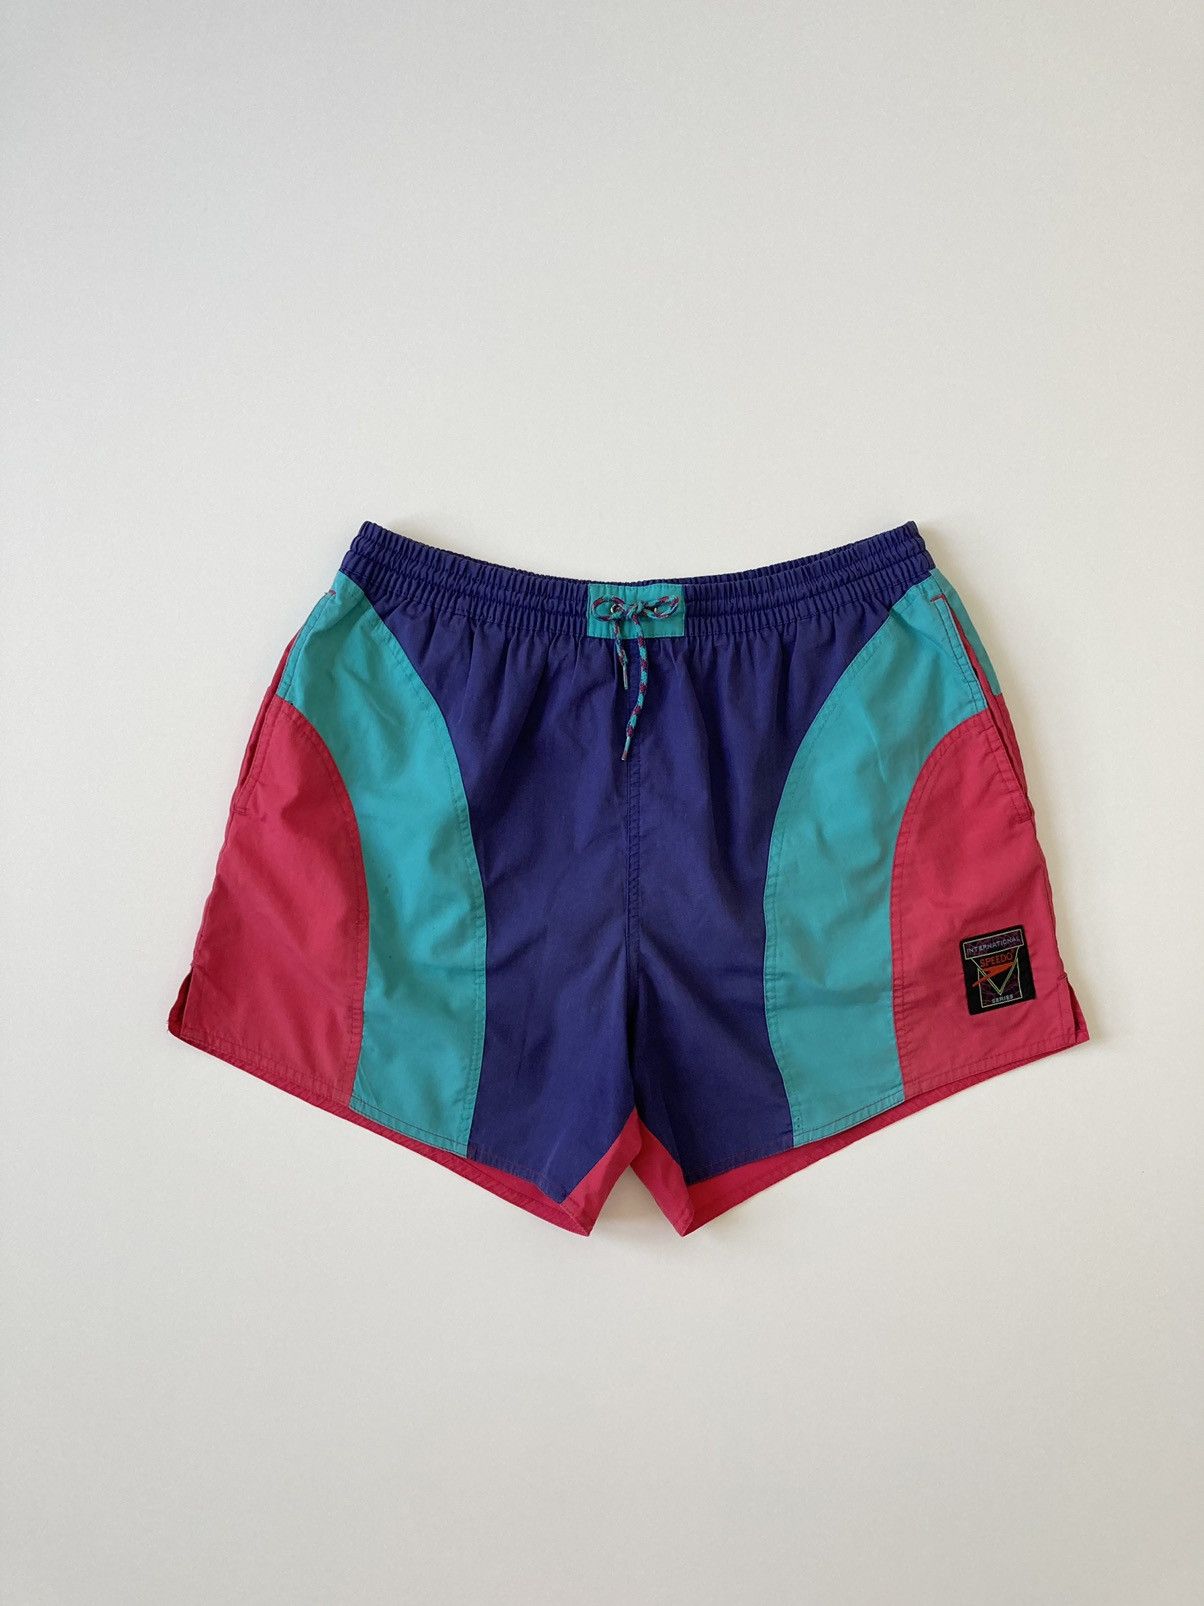 Vintage colorful shorts Speedo Vintage 90’s L Size US 34 / EU 50 - 1 Preview